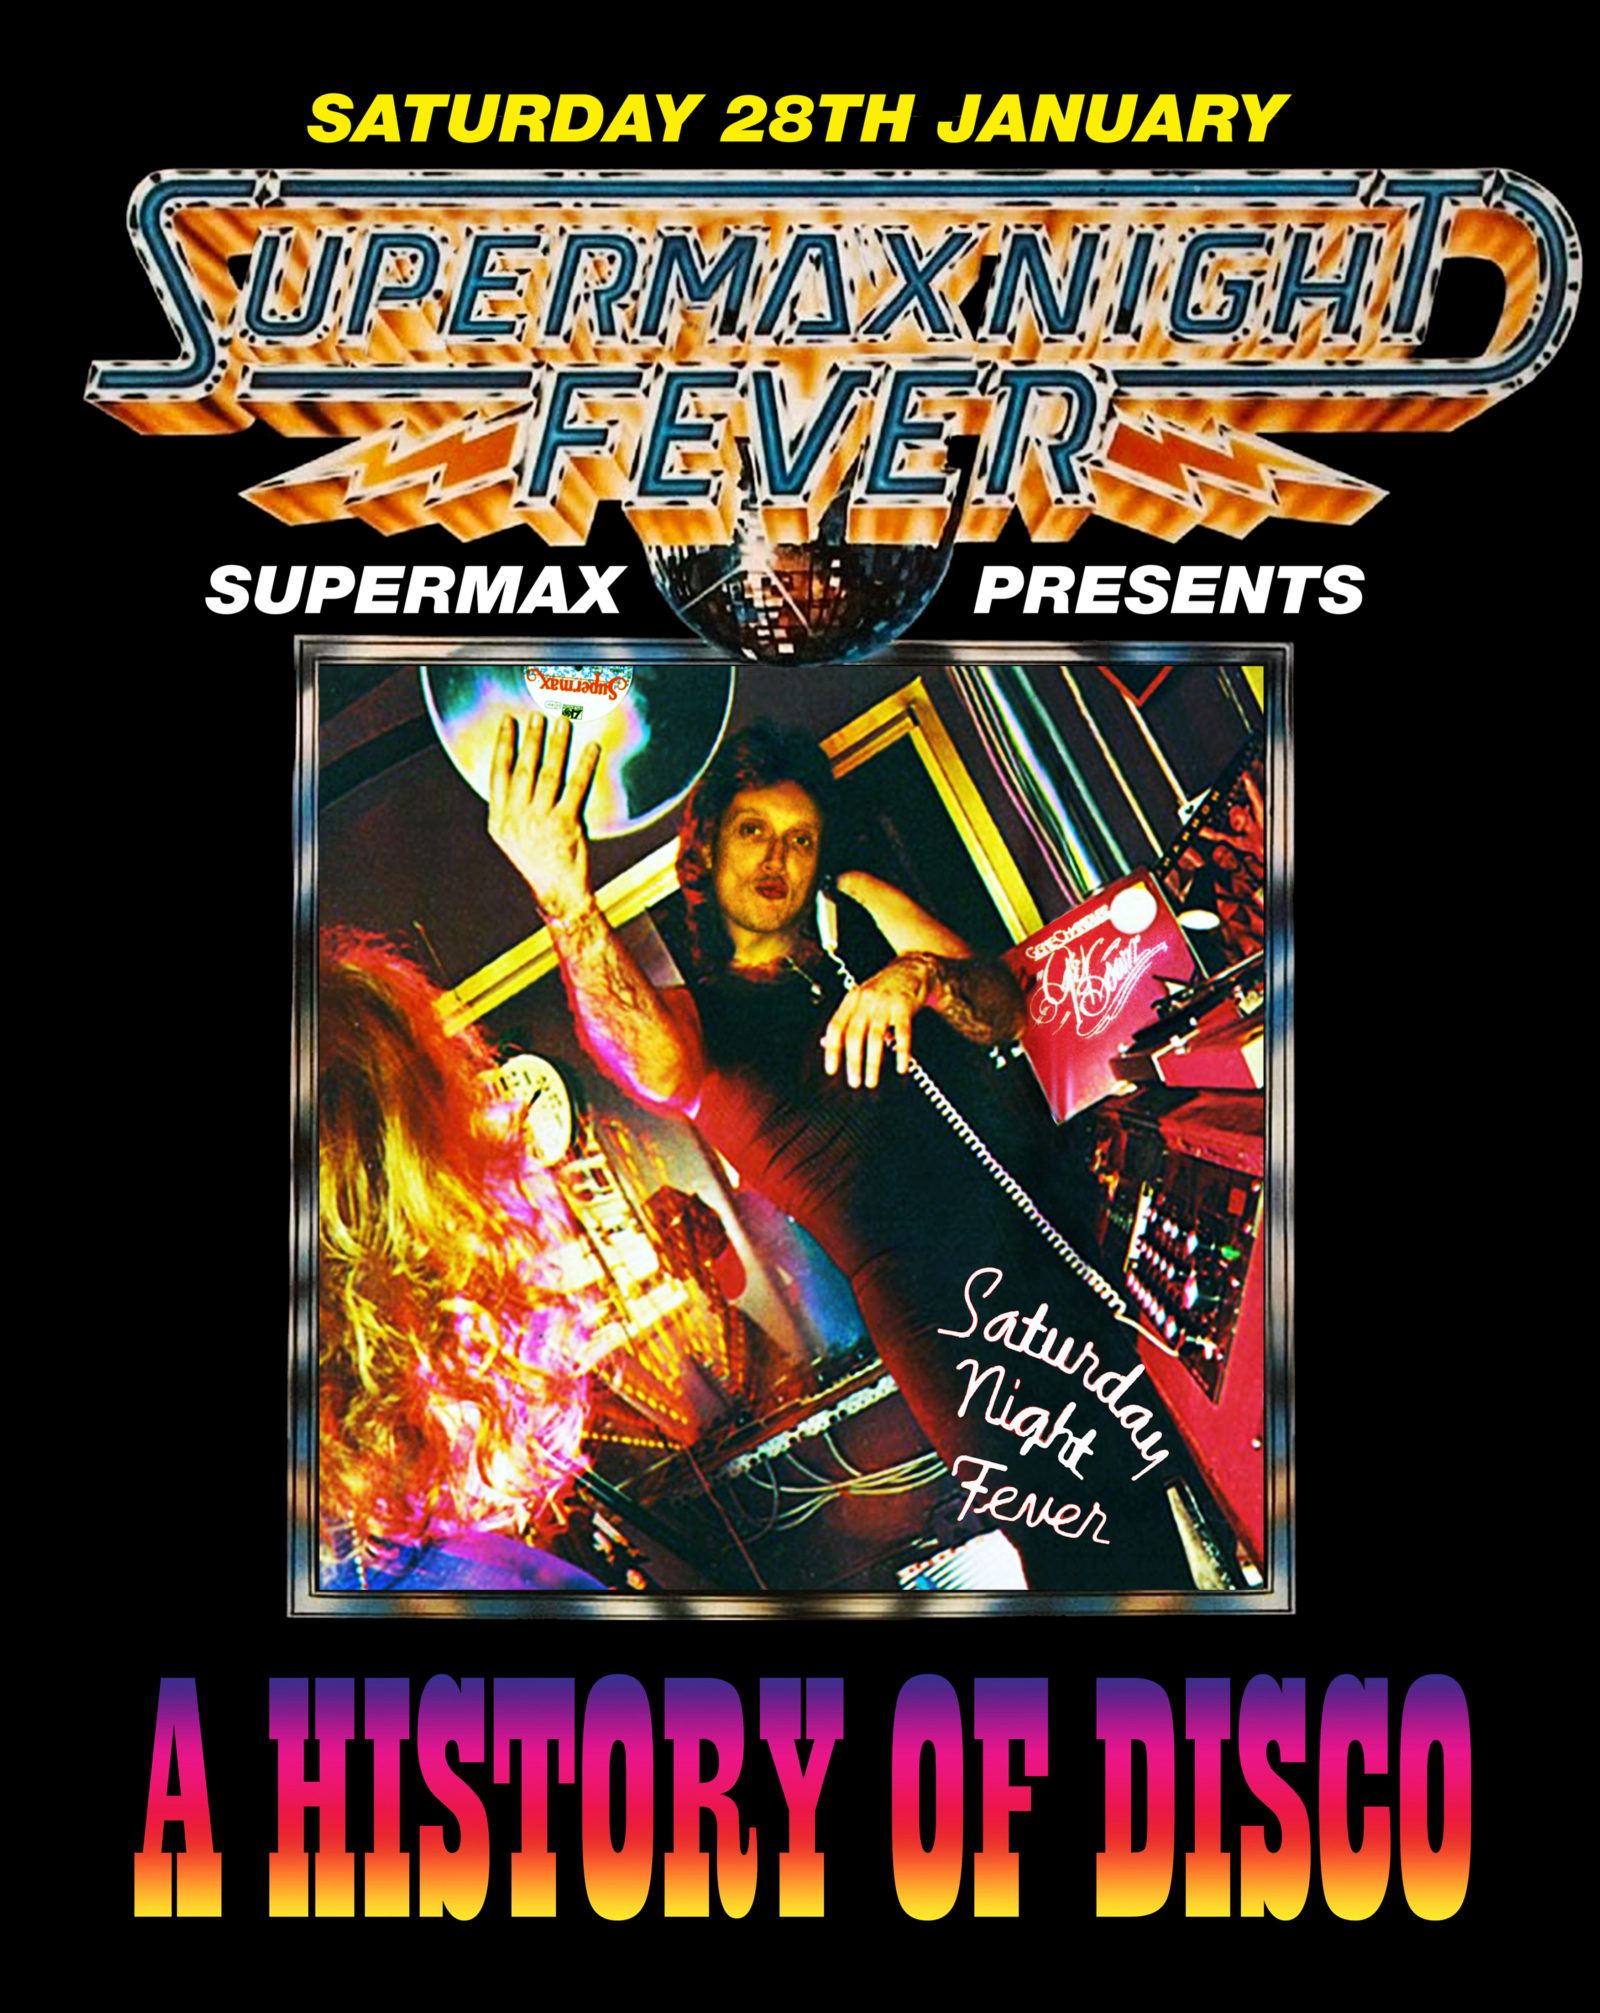 SUPERMAX presents A HISTORY OF D.I.S.C.O